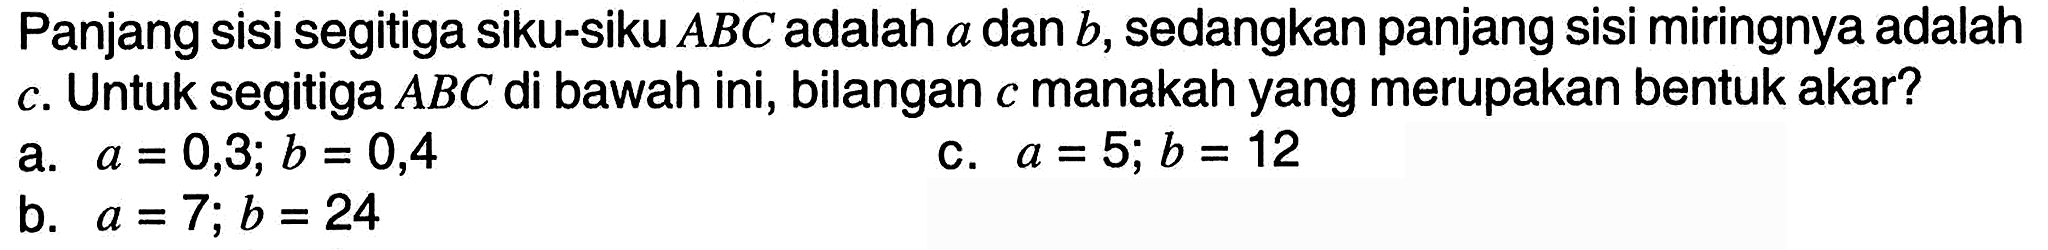 Panjang sisi segitiga siku-siku  A B C  adalah  a  dan  b , sedangkan panjang sisi miringnya adalah c. Untuk segitiga  A B C  di bawah ini, bilangan  c  manakah yang merupakan bentuk akar?
a.  a=0,3 ; b=0,4 
c.  a=5 ; b=12 
b.  a=7 ; b=24 